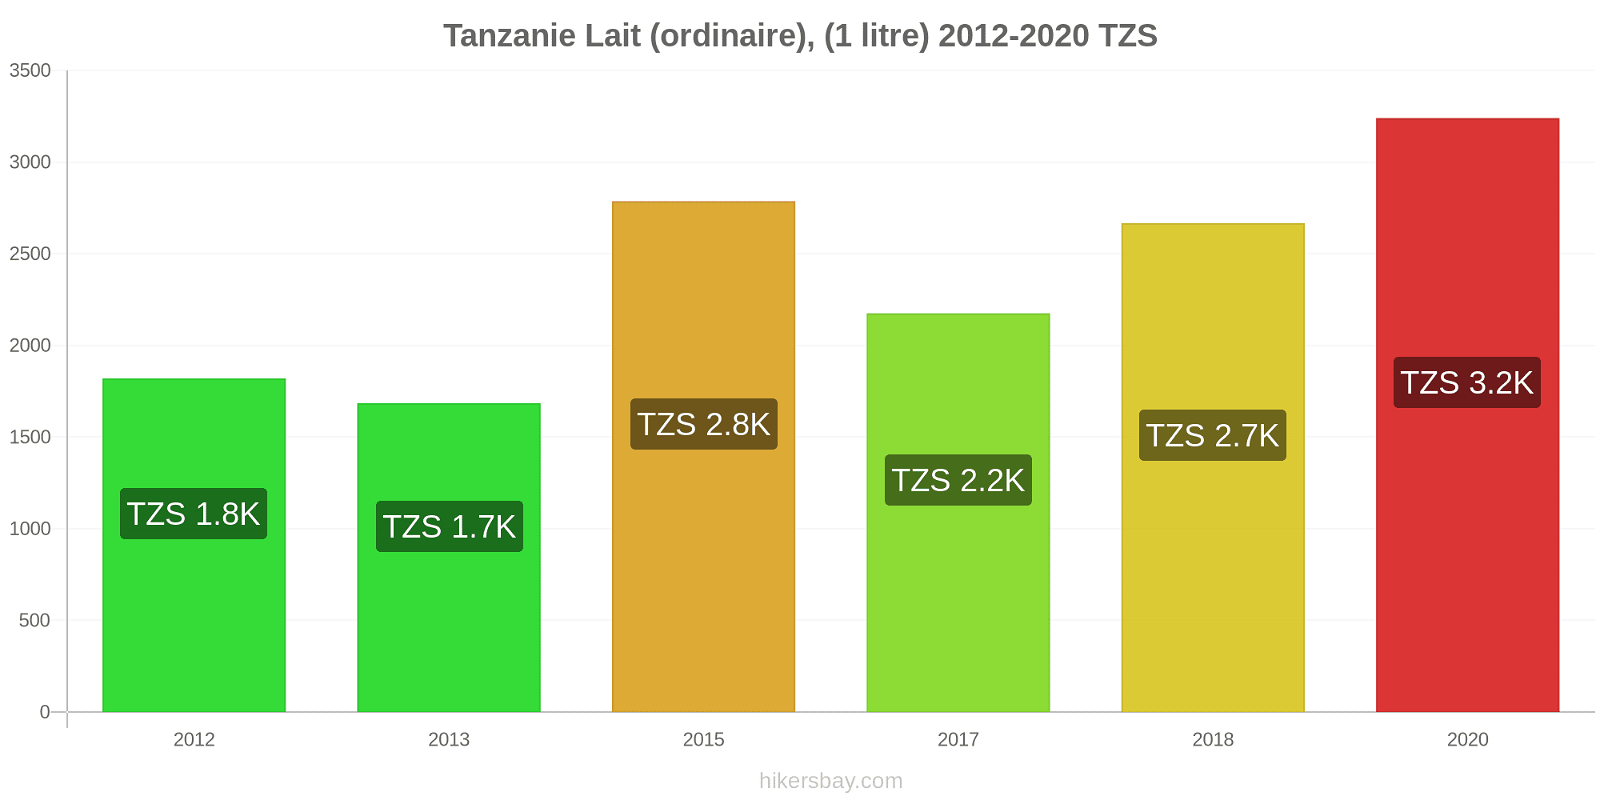 Tanzanie changements de prix (Régulier), lait (1 litre) hikersbay.com